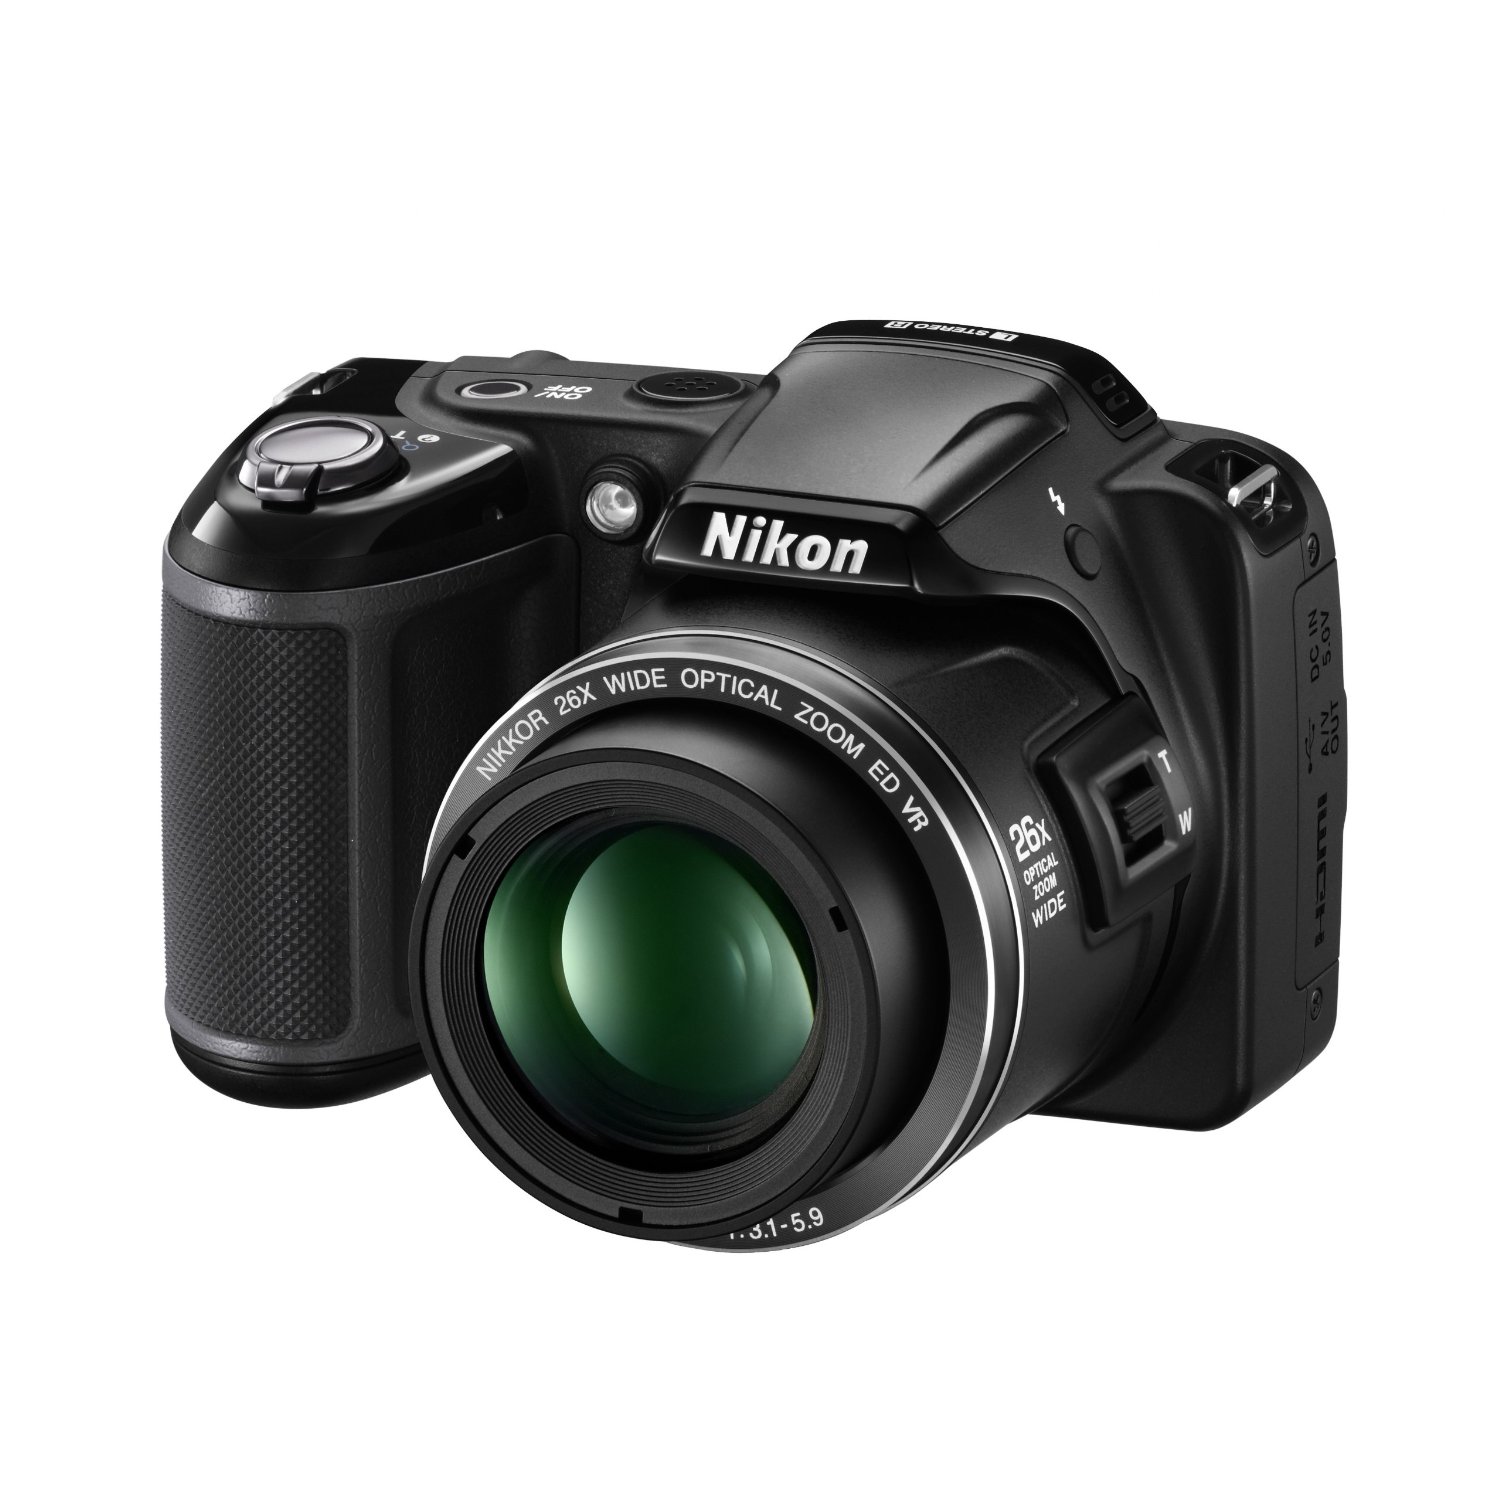 Nikon COOLPIX L810 Review